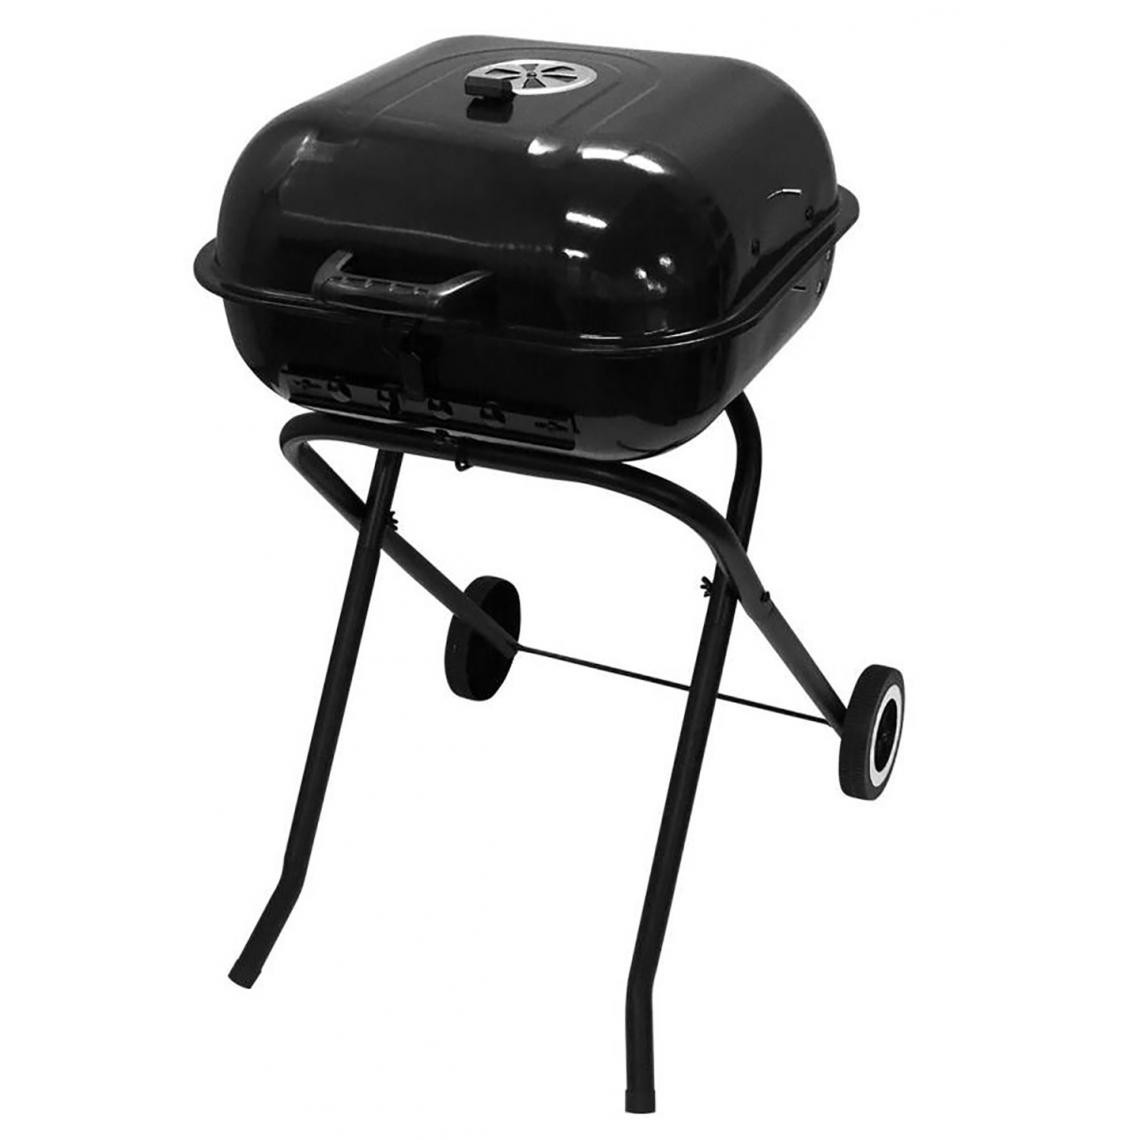 Pegane - Barbecue pliant avec roues en acier coloris noir - Longueur 47 x Profondeur 52 x Hauteur 87 cm - Barbecues gaz